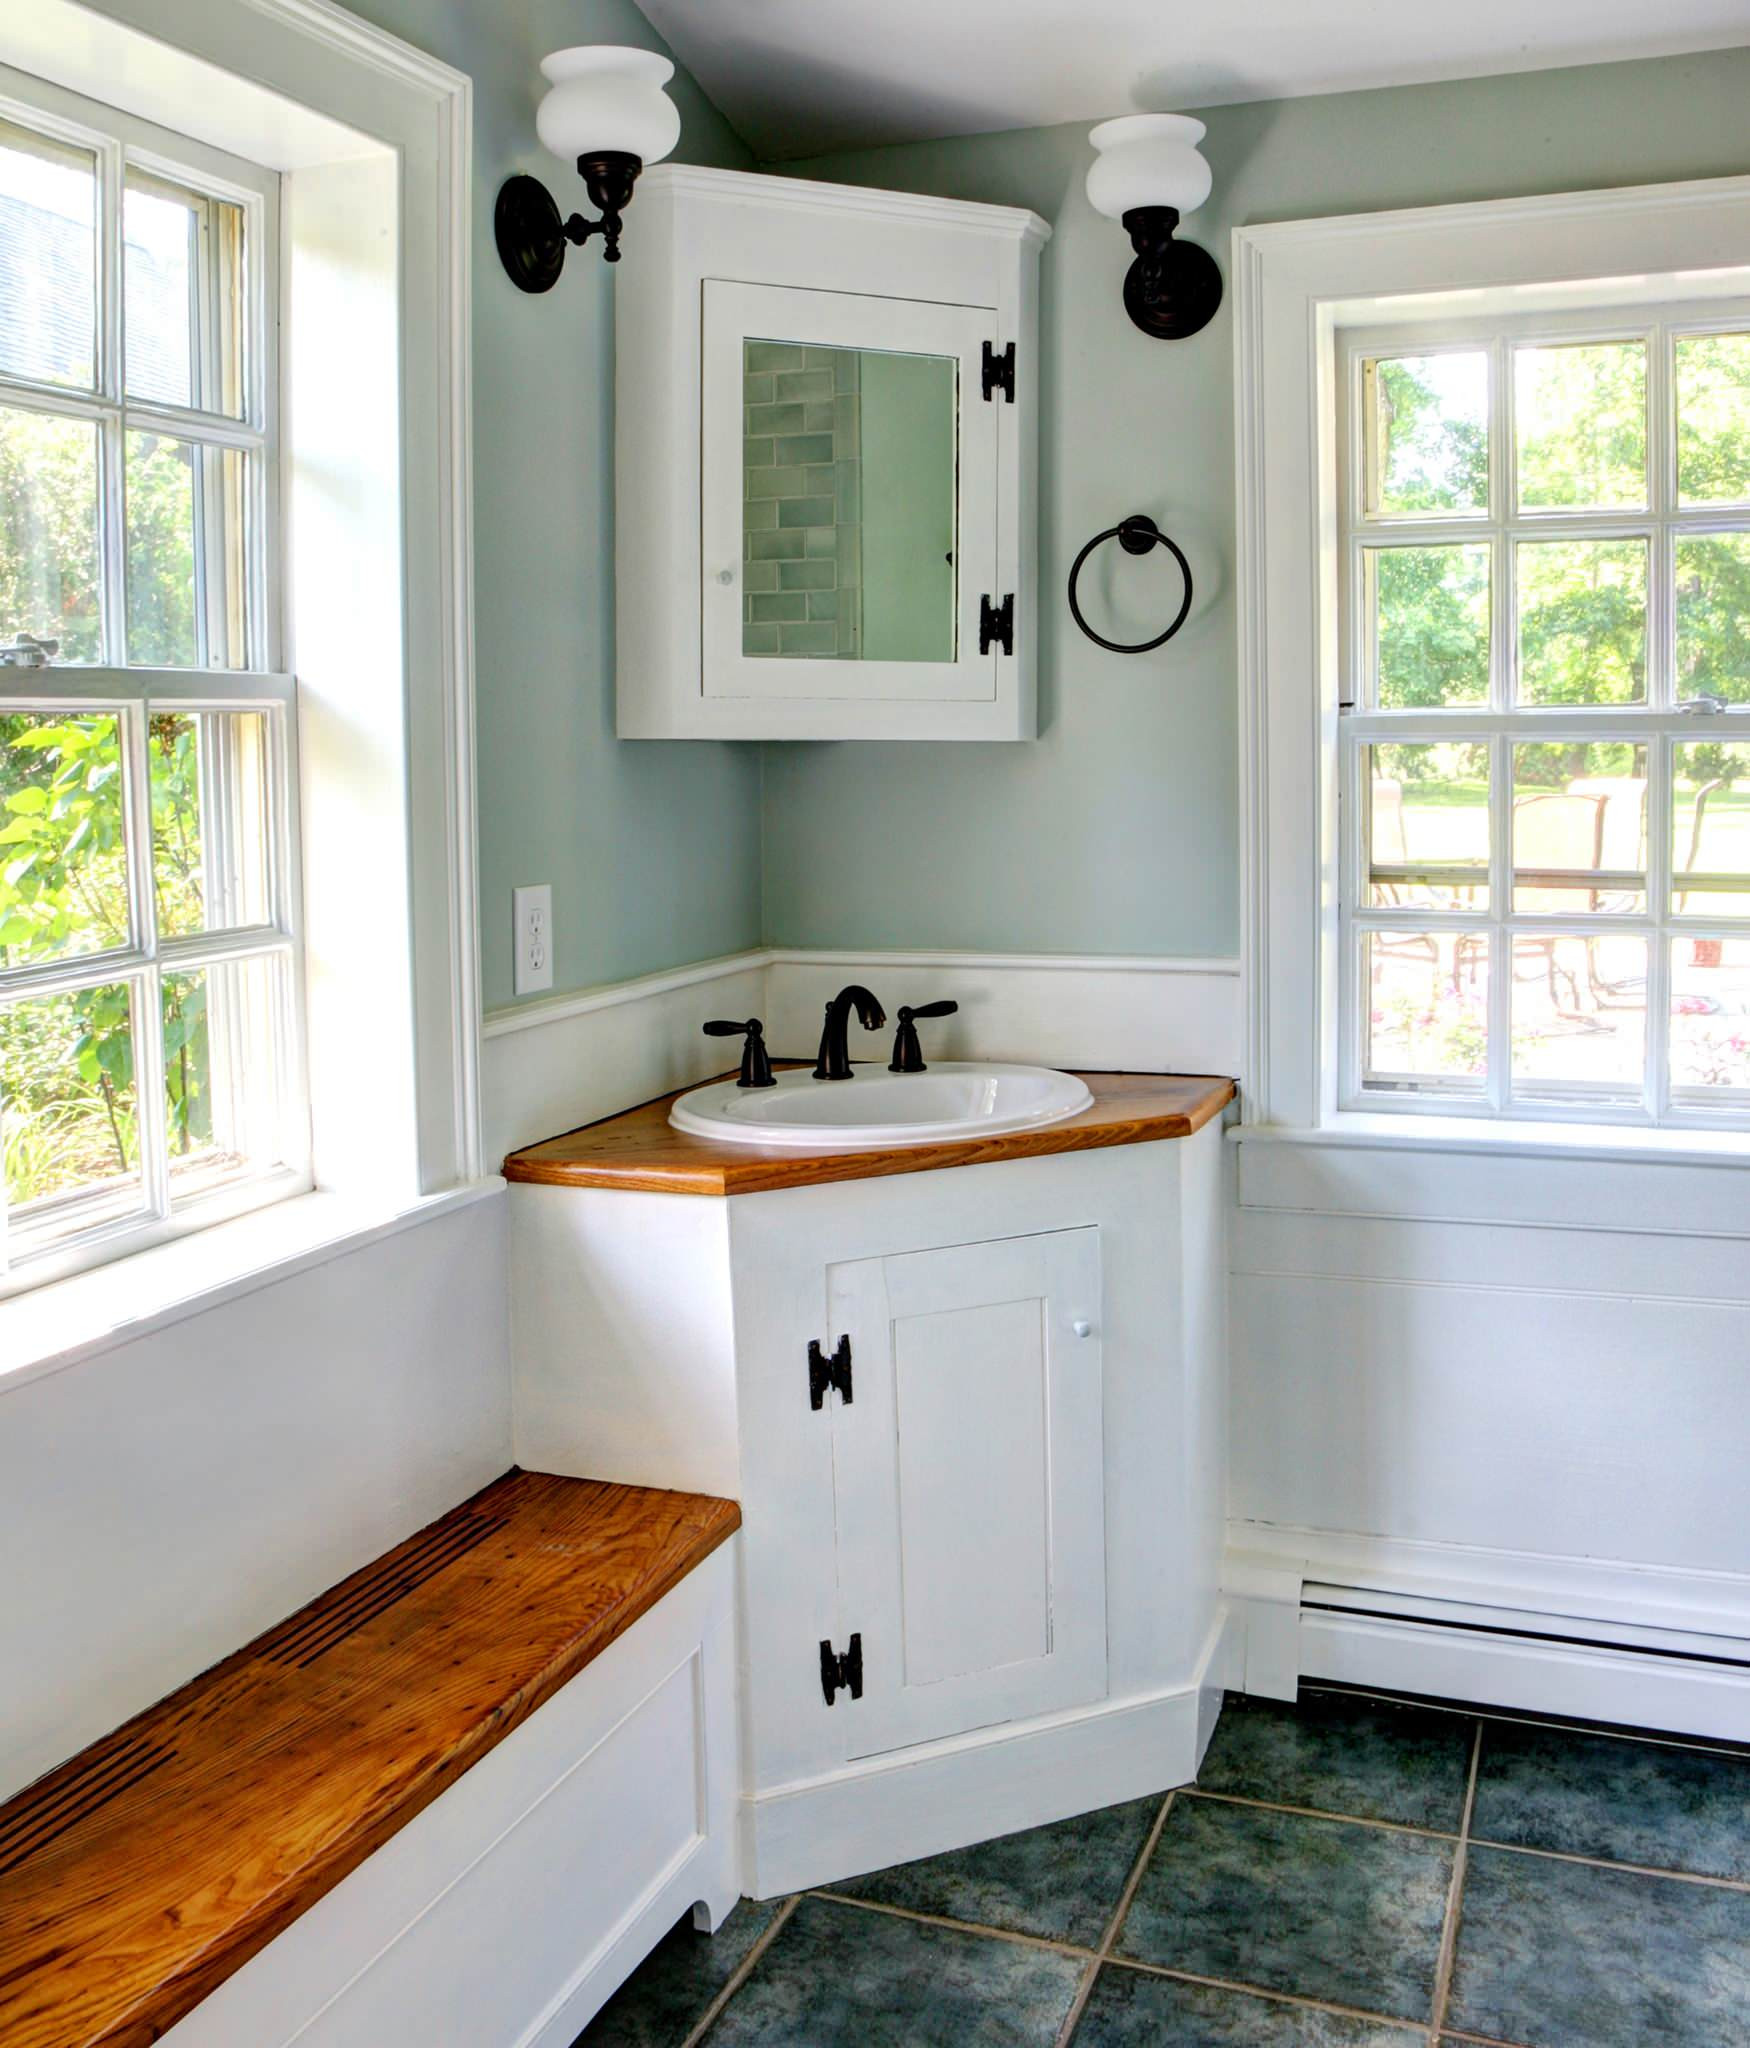 Small Corner Cabinet For Bathroom
 10 Inspirational Corner Bathroom Vanities